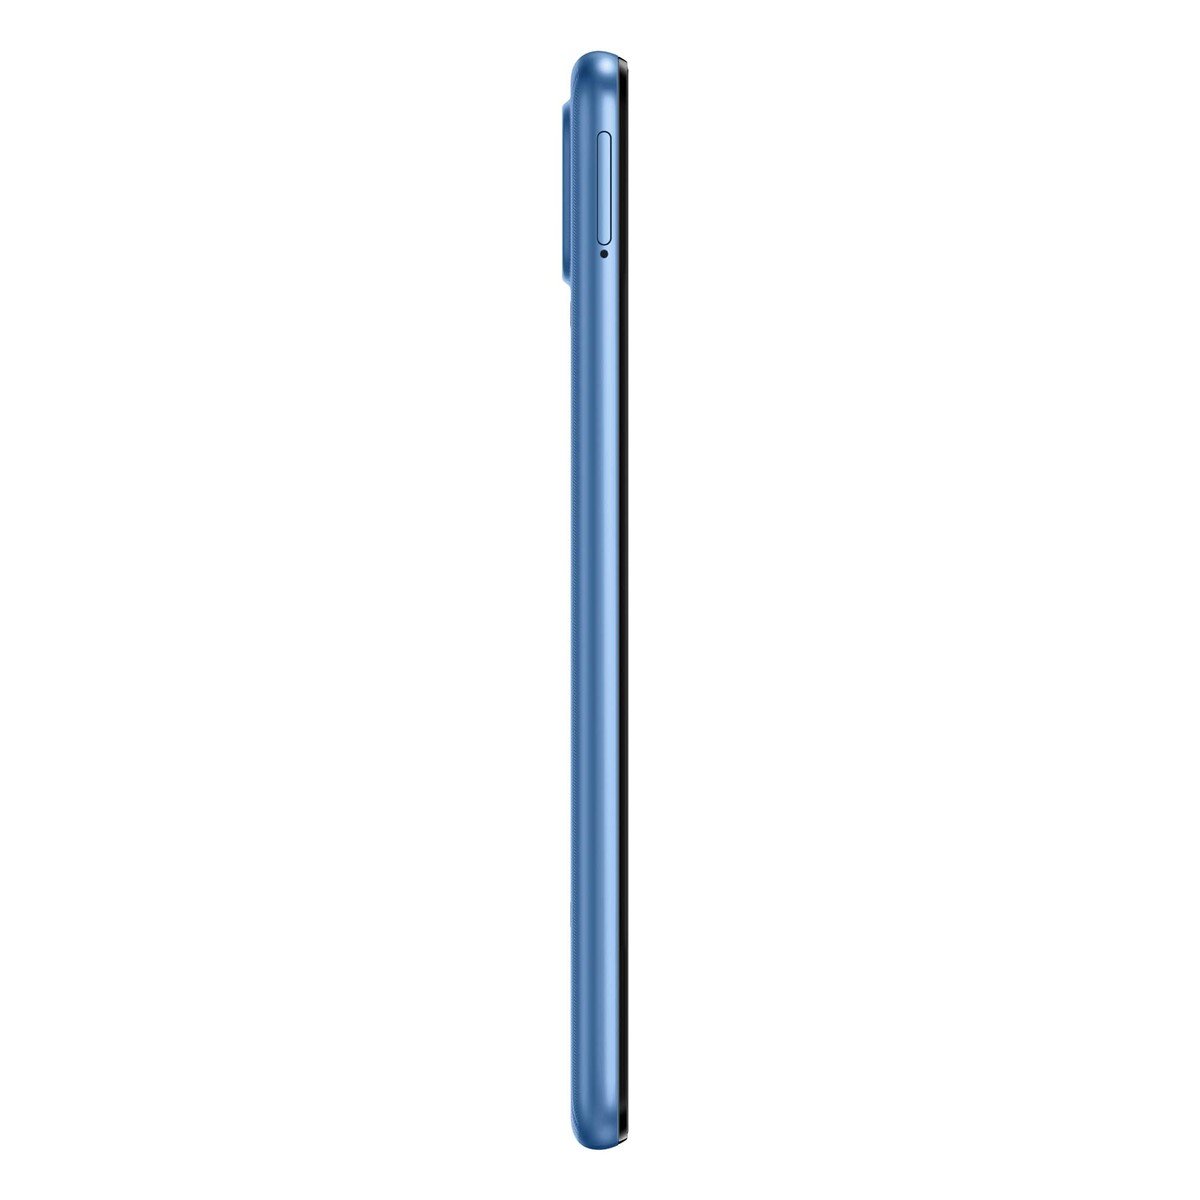 Samsung Galaxy M22 SM-M225FLBDMEA 64GB Blue